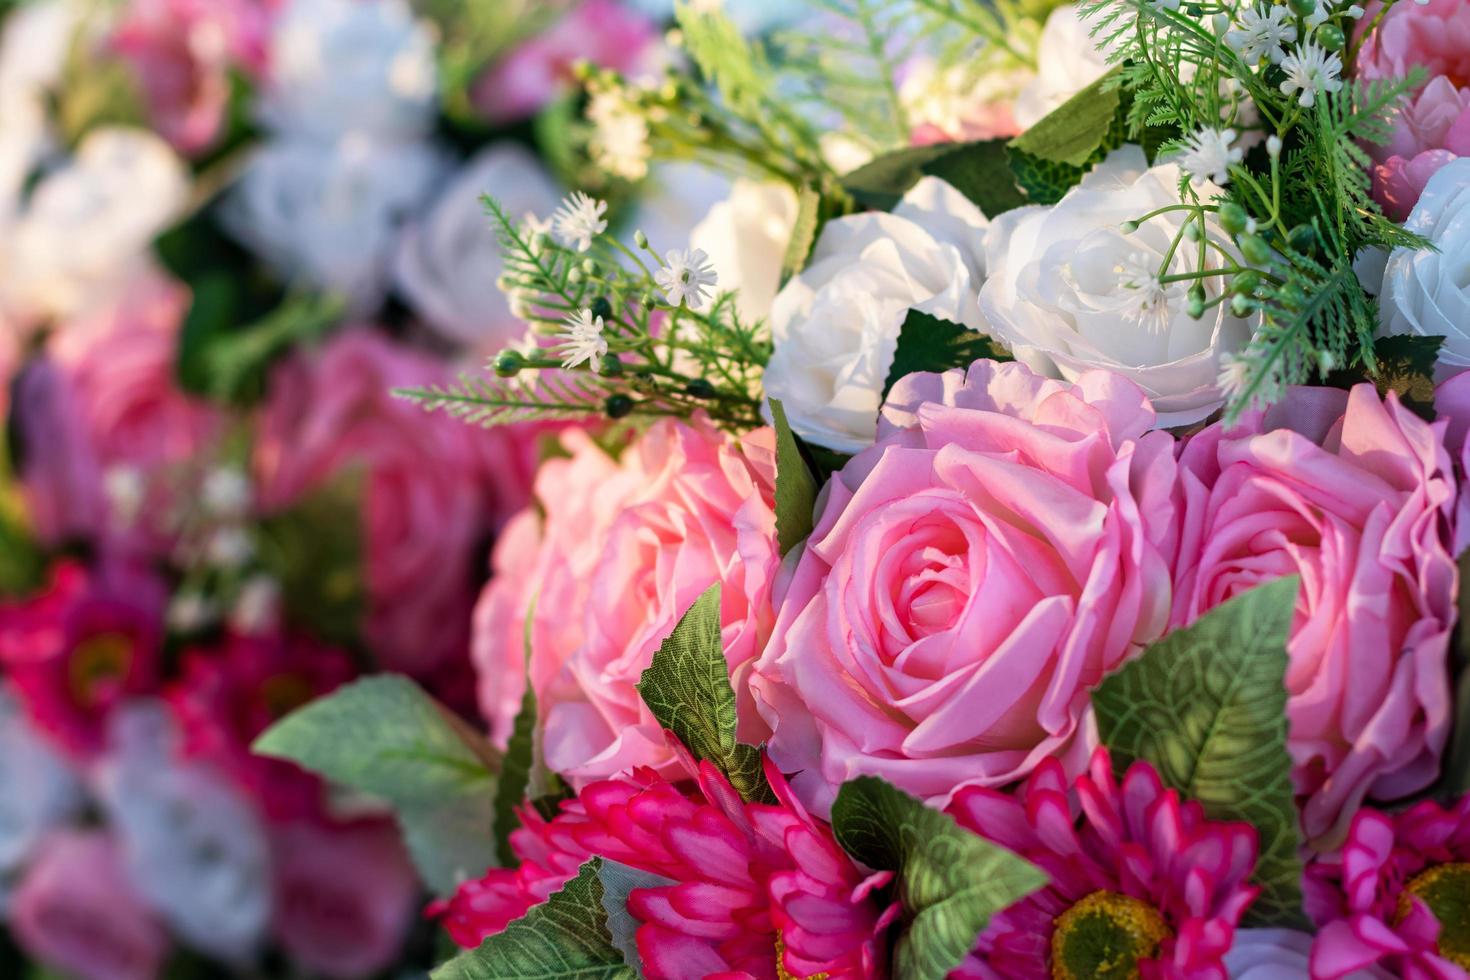 bellissimo bouquet di rose artificiali rosa e bianche. foto